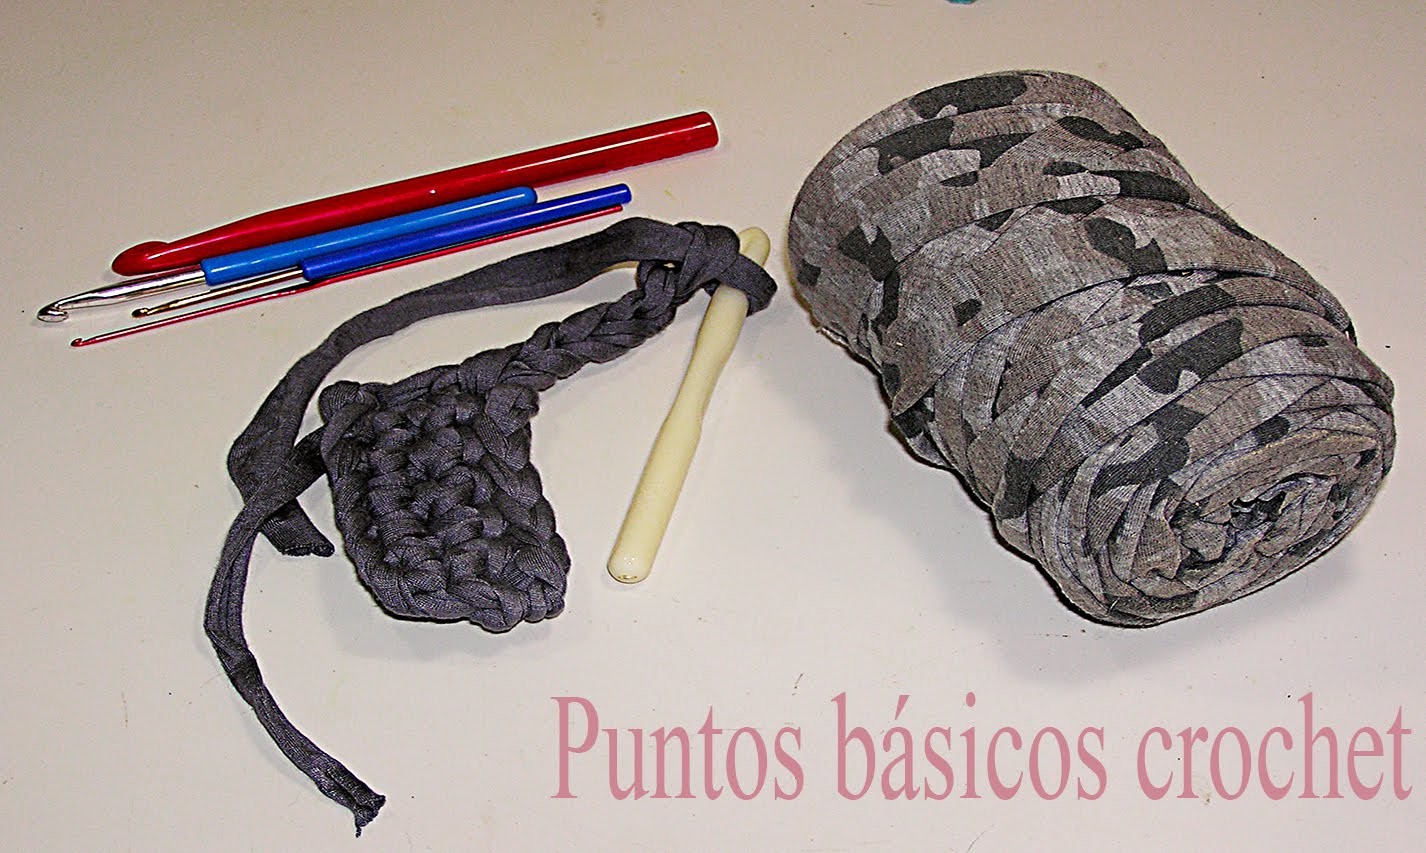 Puntos básicos crochet: nudo inicial, cadenetas, puntos bajo, alto y enano